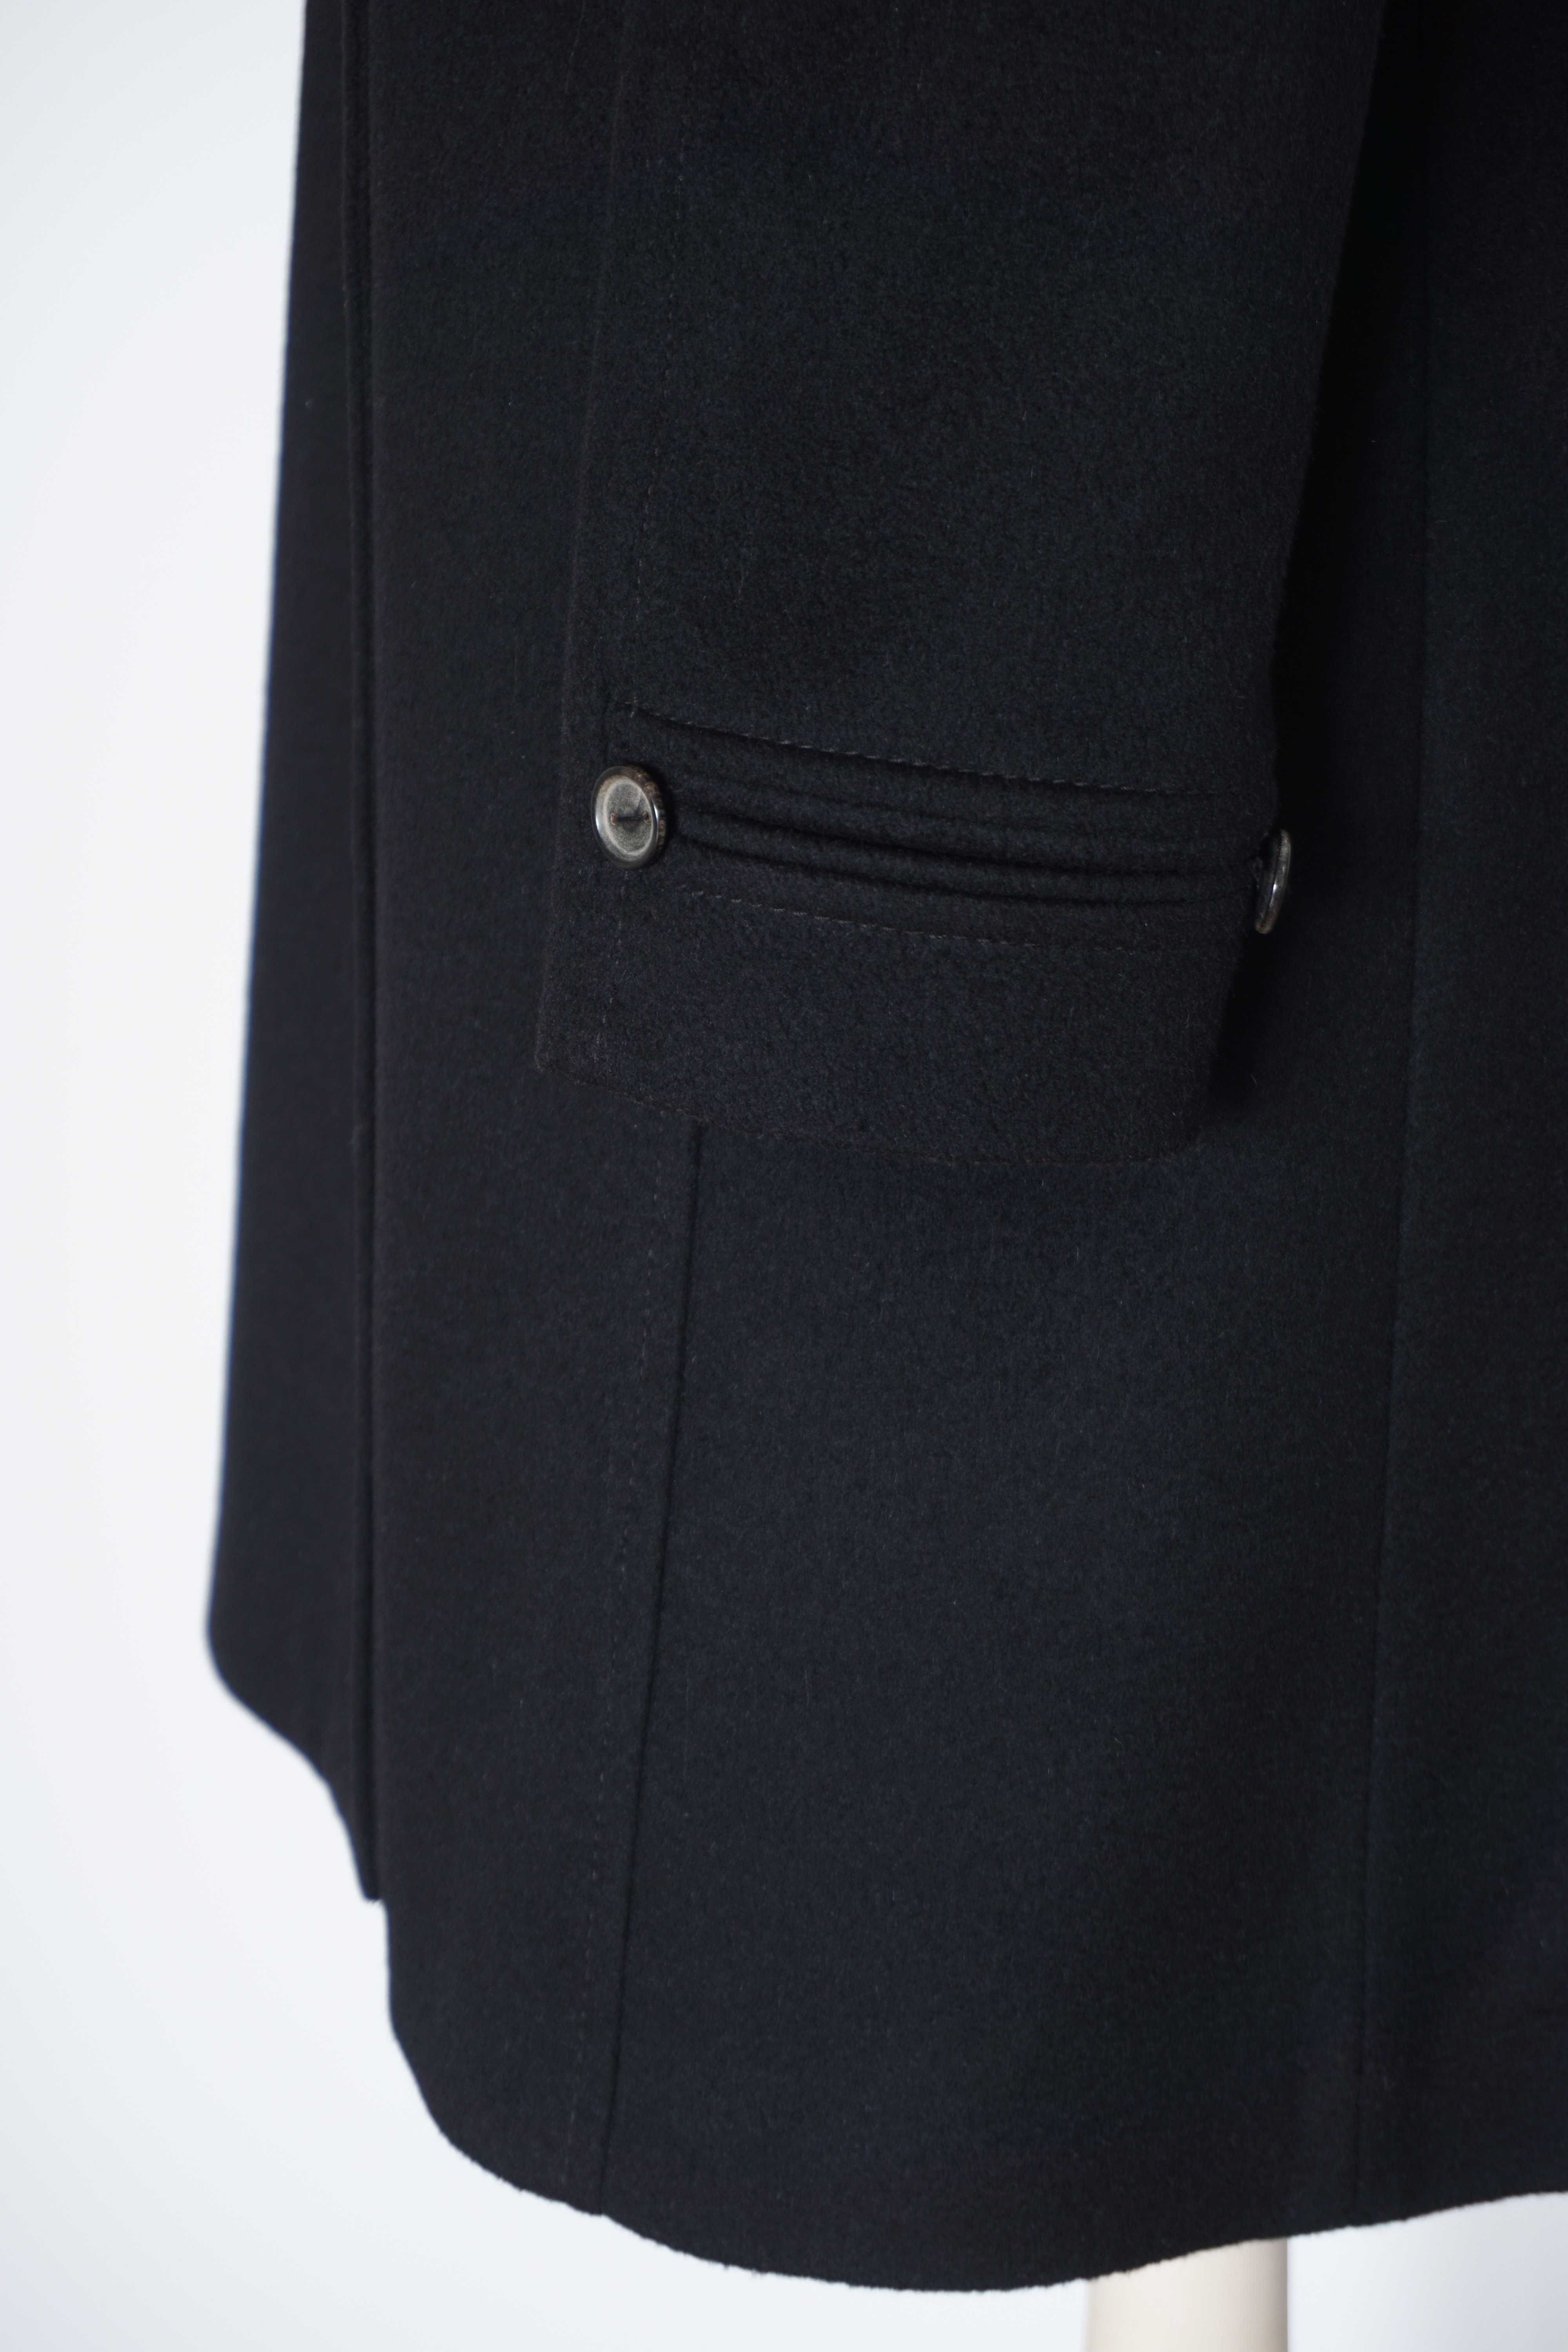 Płaszcz 100% wełna czarny damski wełniany wiosenny elegancki S